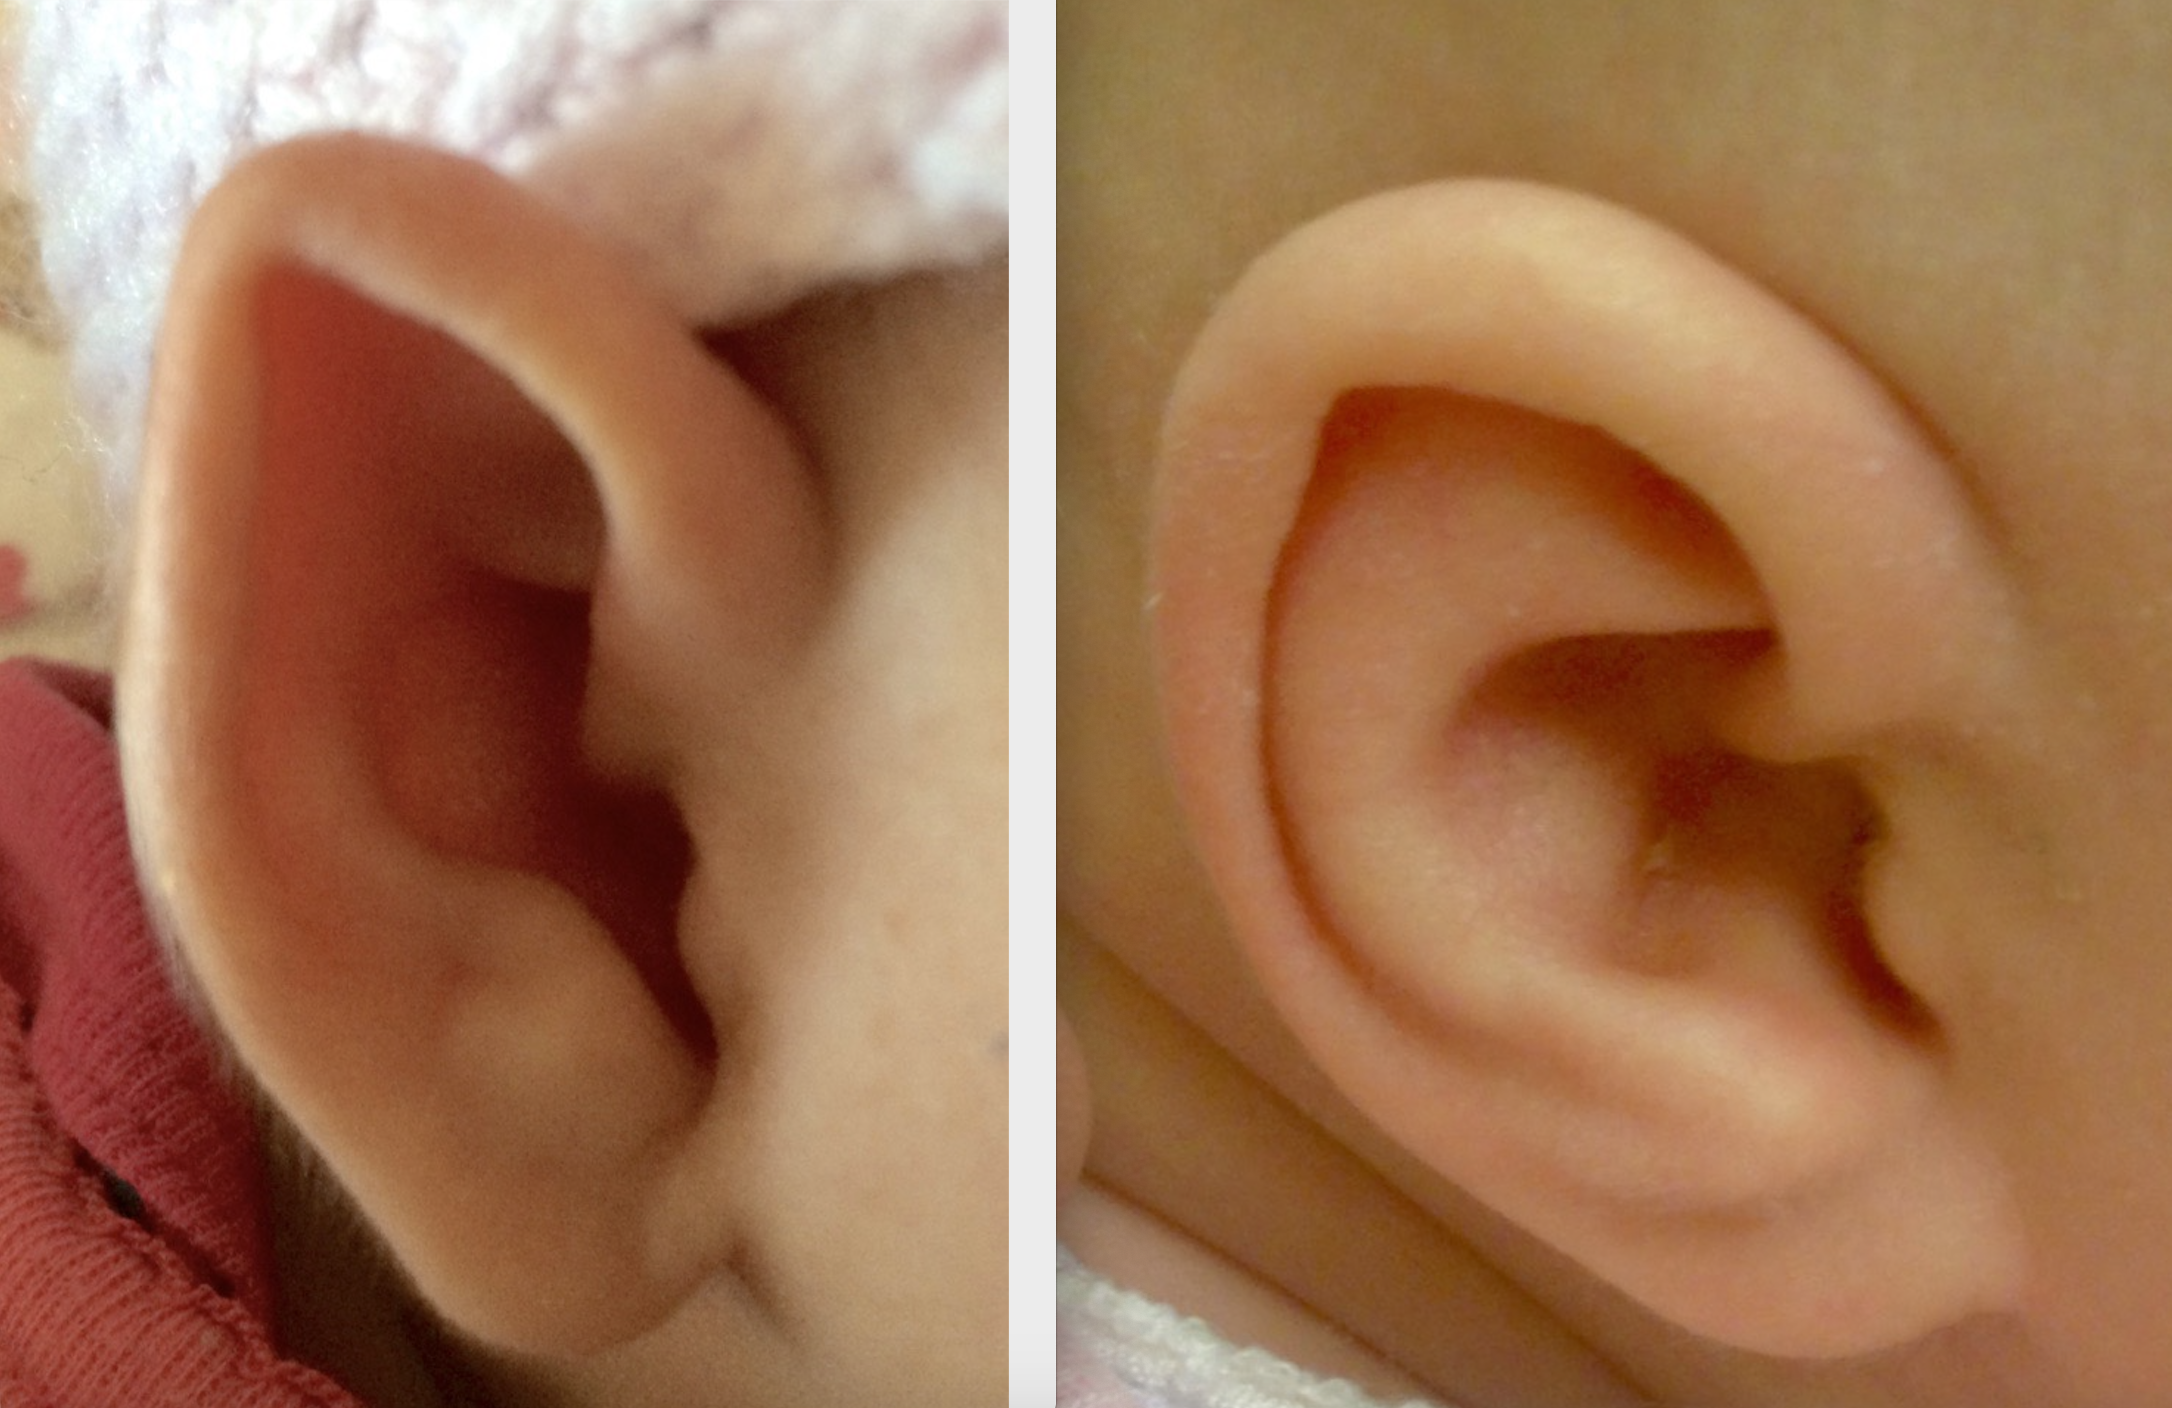 Ear molding restores normal ear shape.